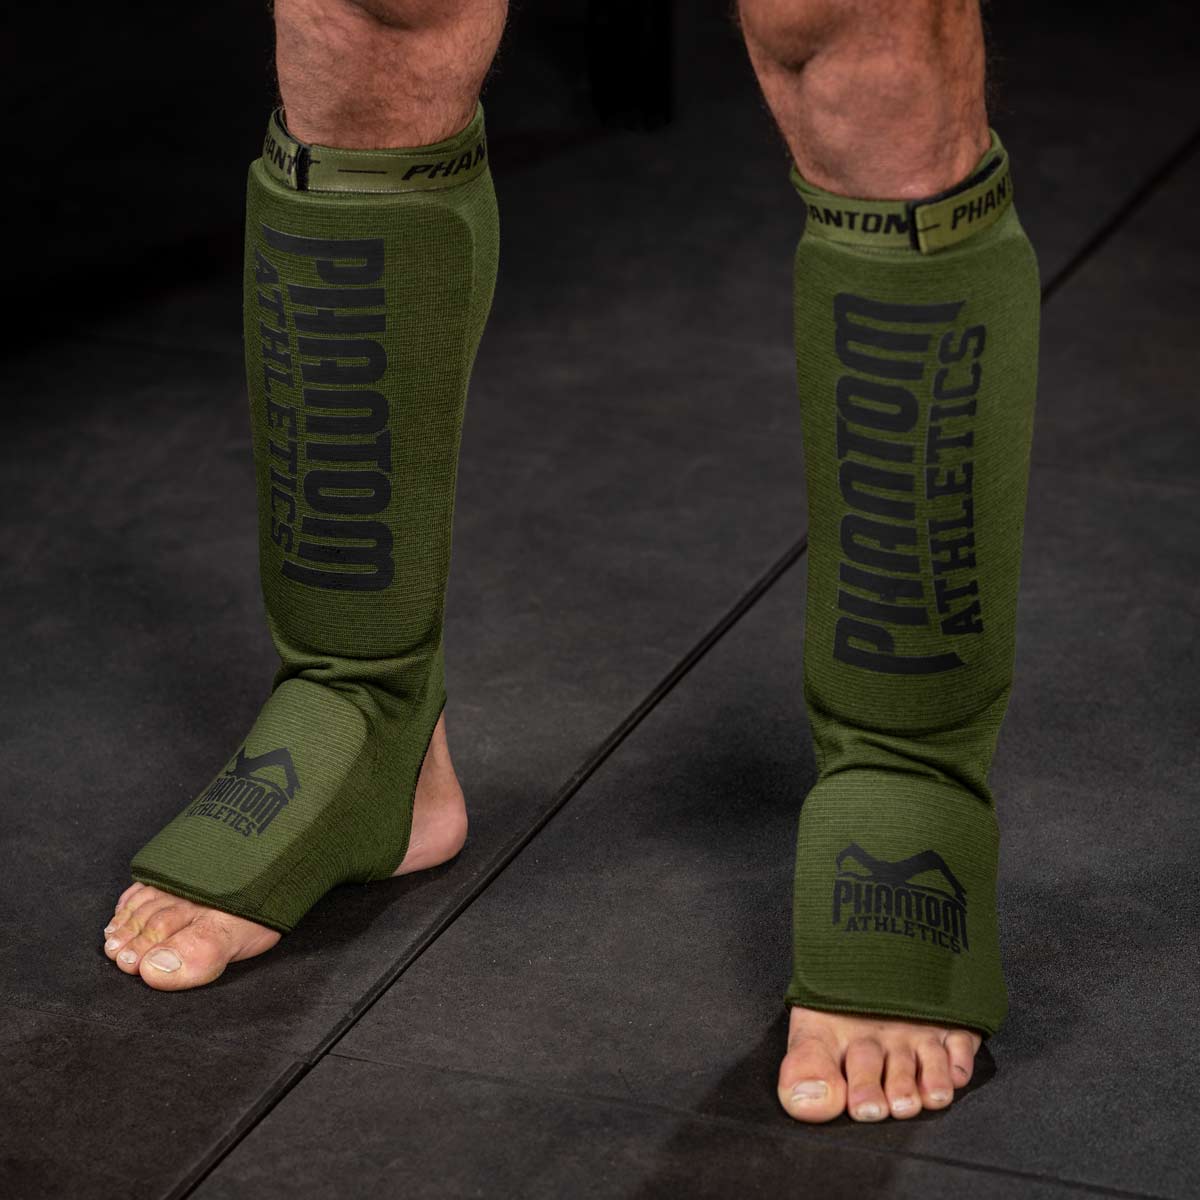 Die Phantom Impact MMA Schienbeinschoner verfügen über ein dünnes Padding am Schienbein und am Vorderfuß und eignen sich sowohl fürs Training als auch für Amateur Wettkämpfe.